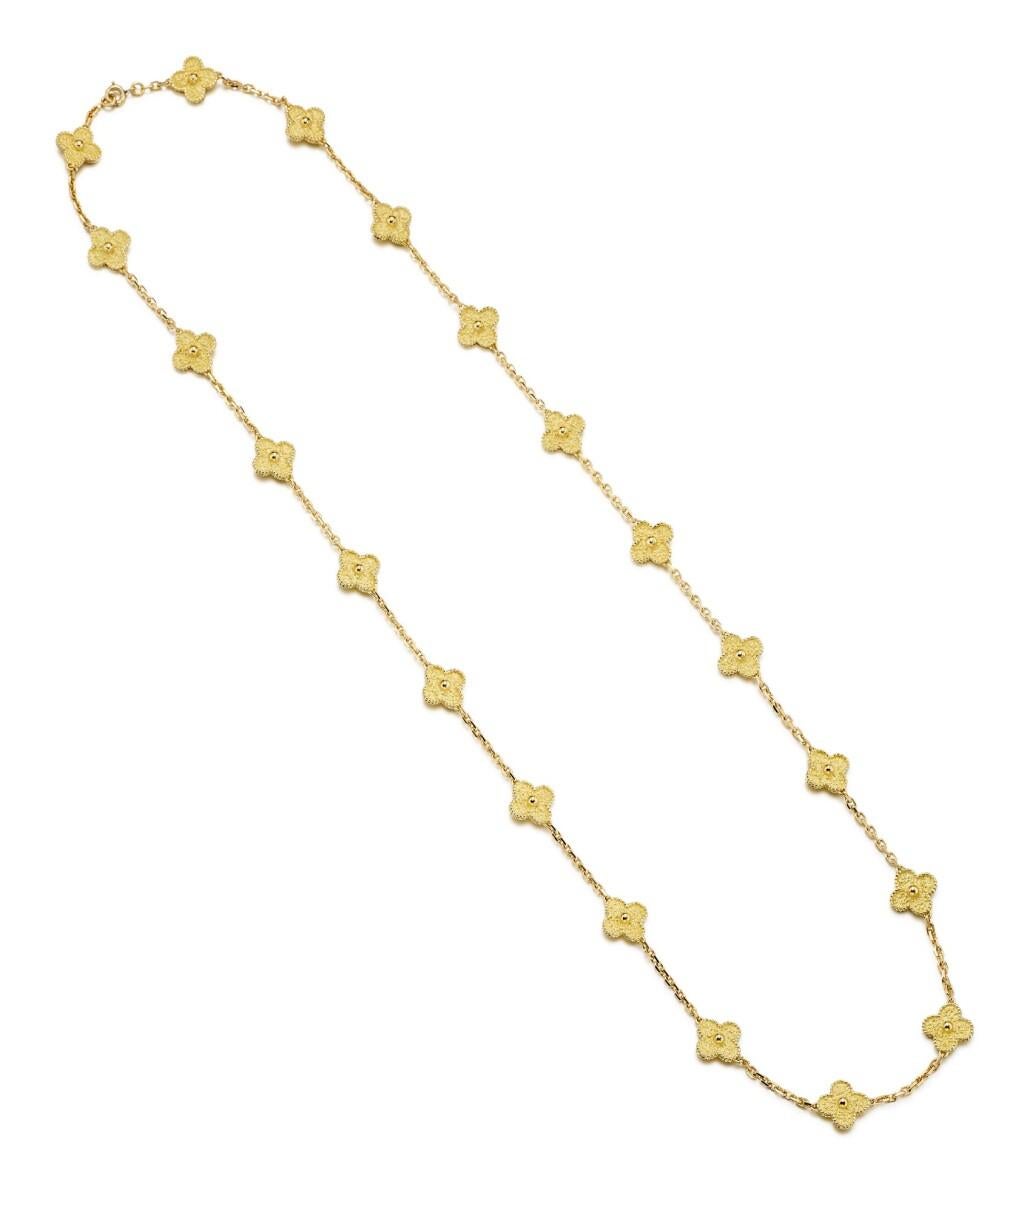 20 motif necklace